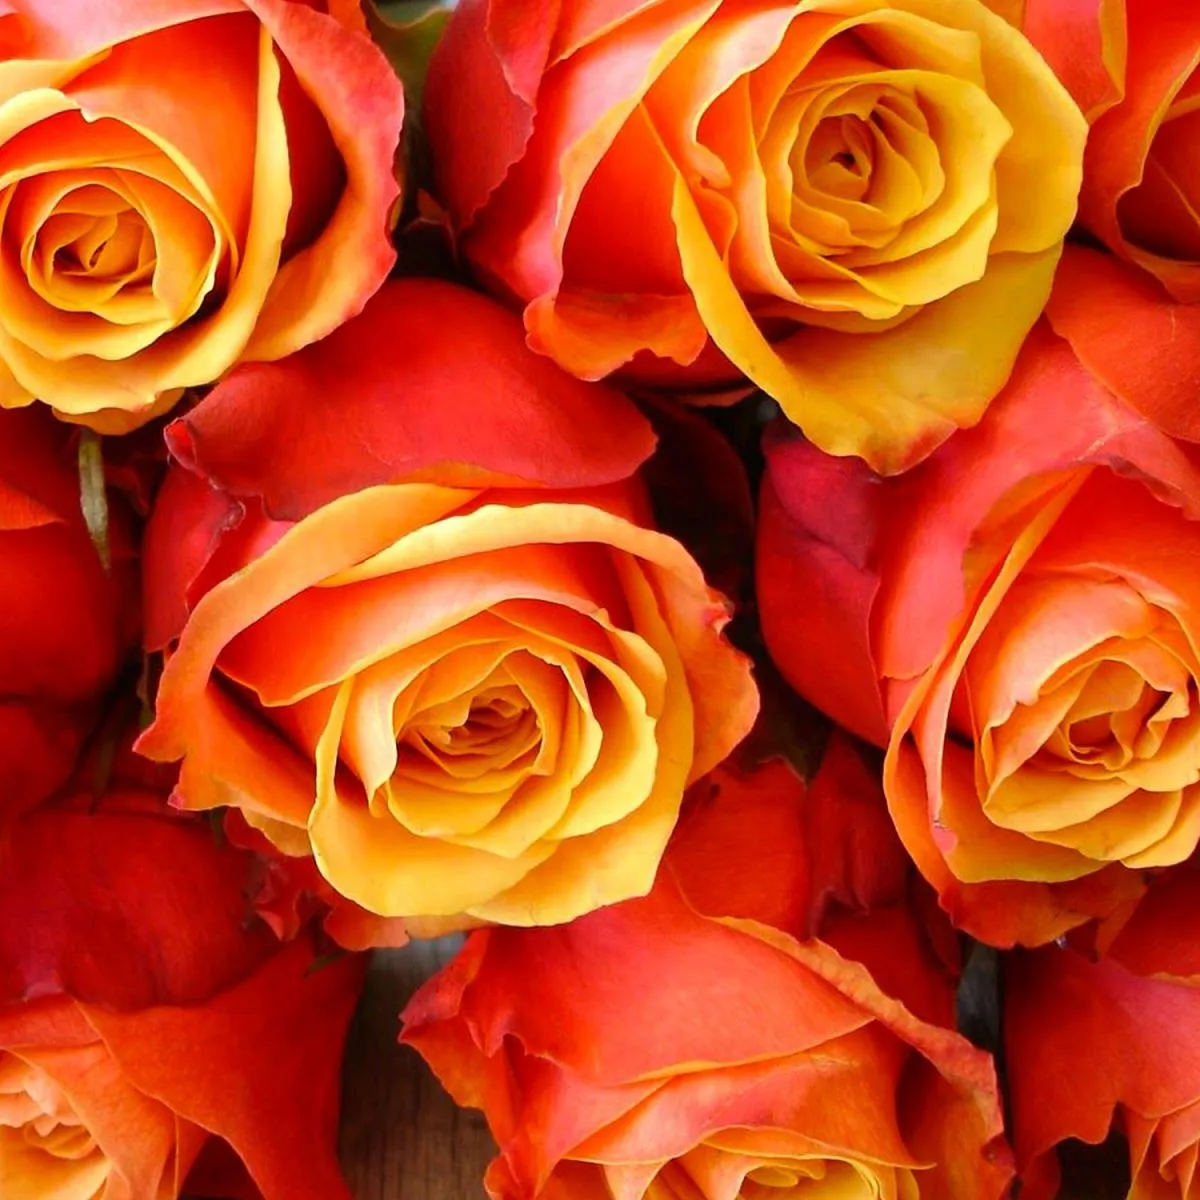 21 оранжевая роза (50 см)